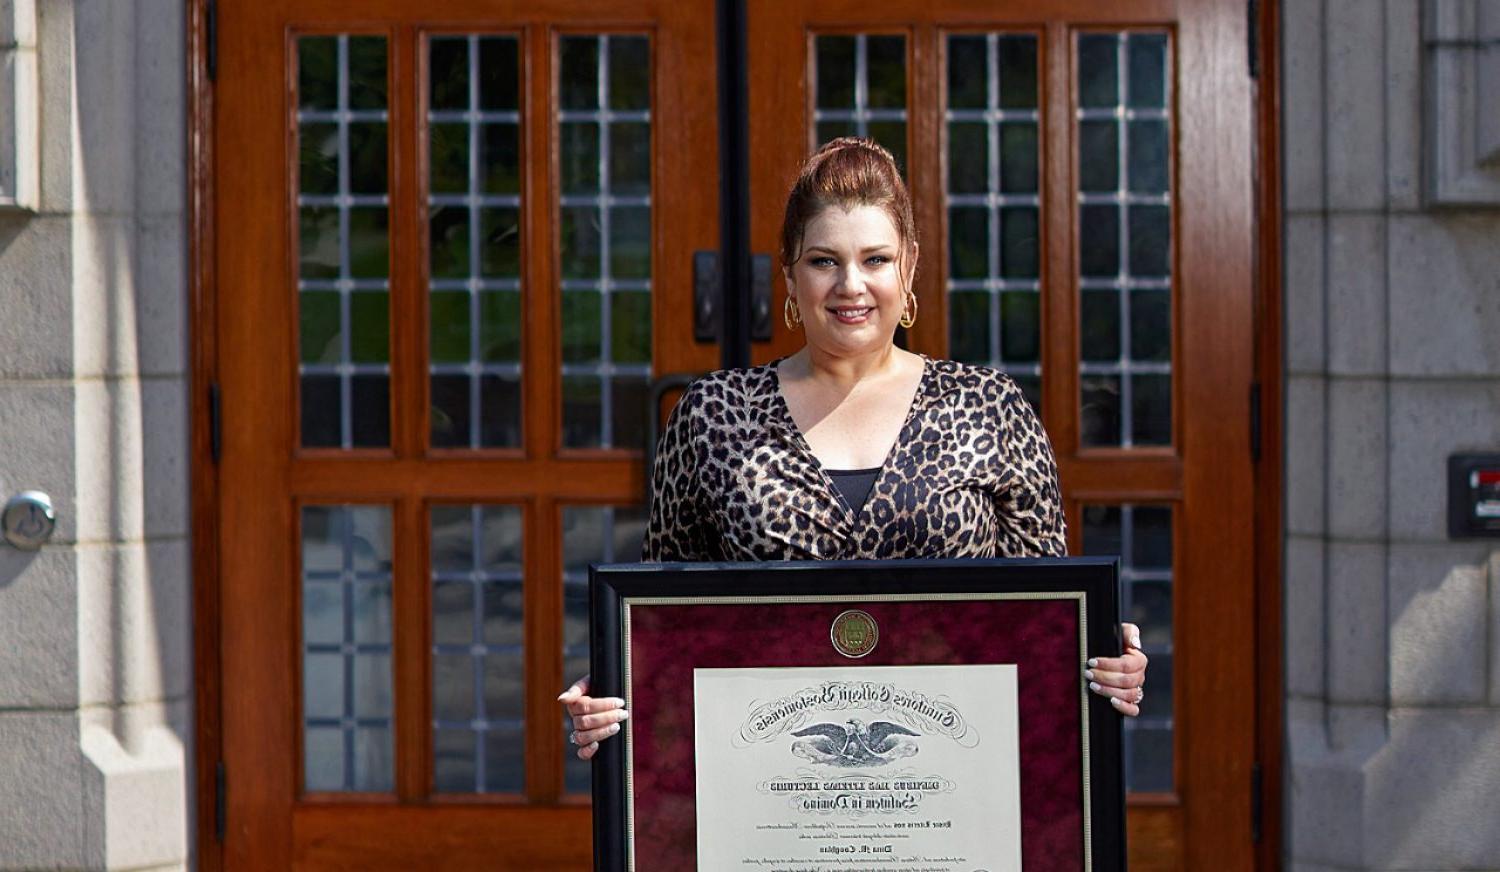 Dina Coughlan holding her diploma